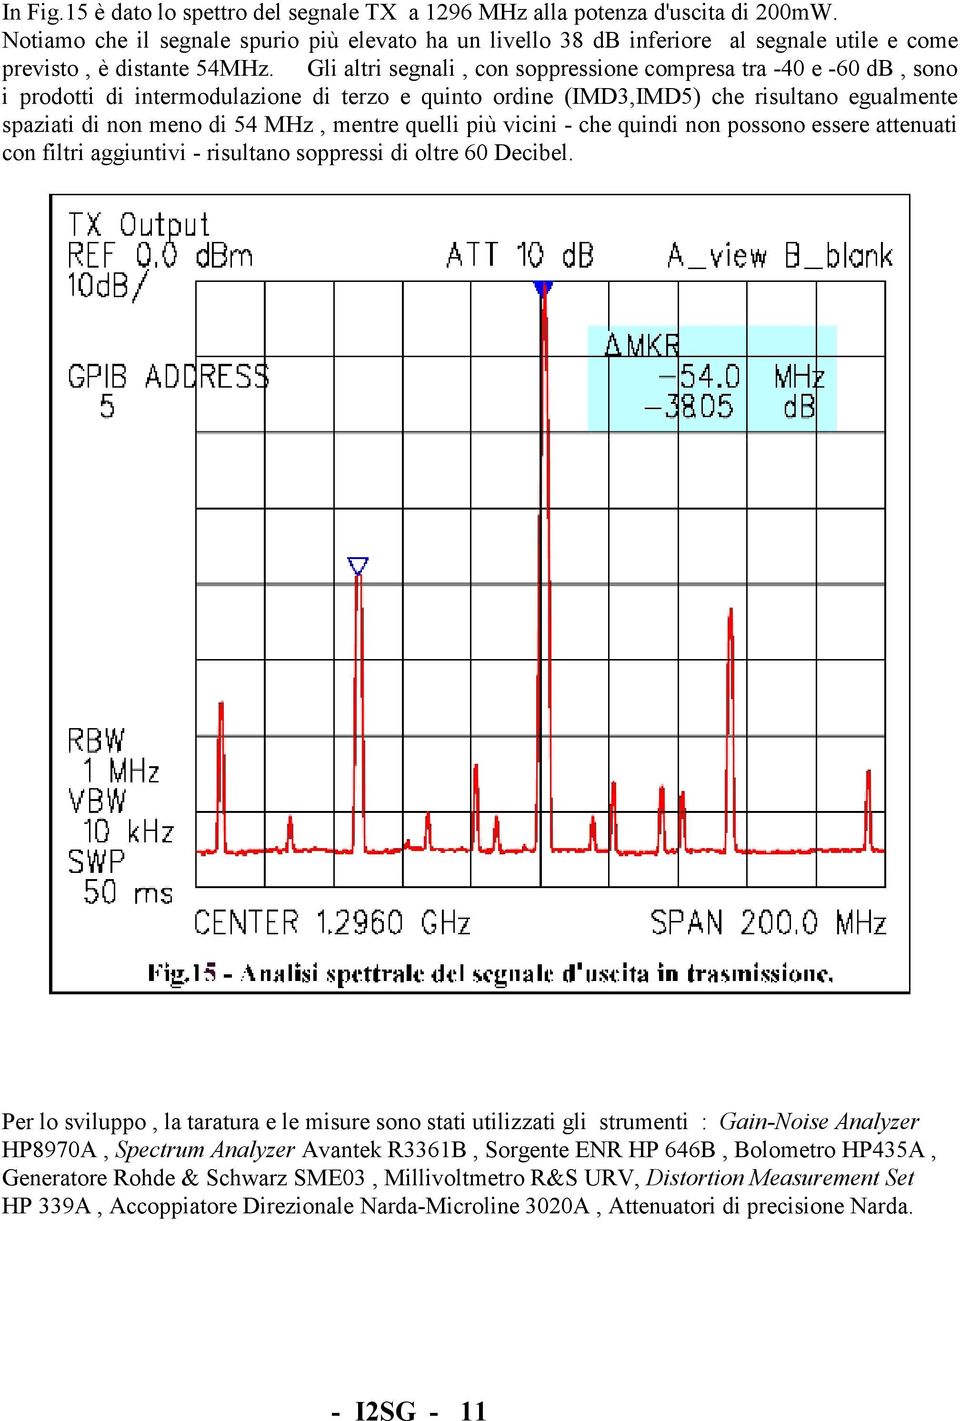 Gli altri segnali, con soppressione compresa tra -40 e -60 db, sono i prodotti di intermodulazione di terzo e quinto ordine (IMD3,IMD5) che risultano egualmente spaziati di non meno di 54 MHz, mentre